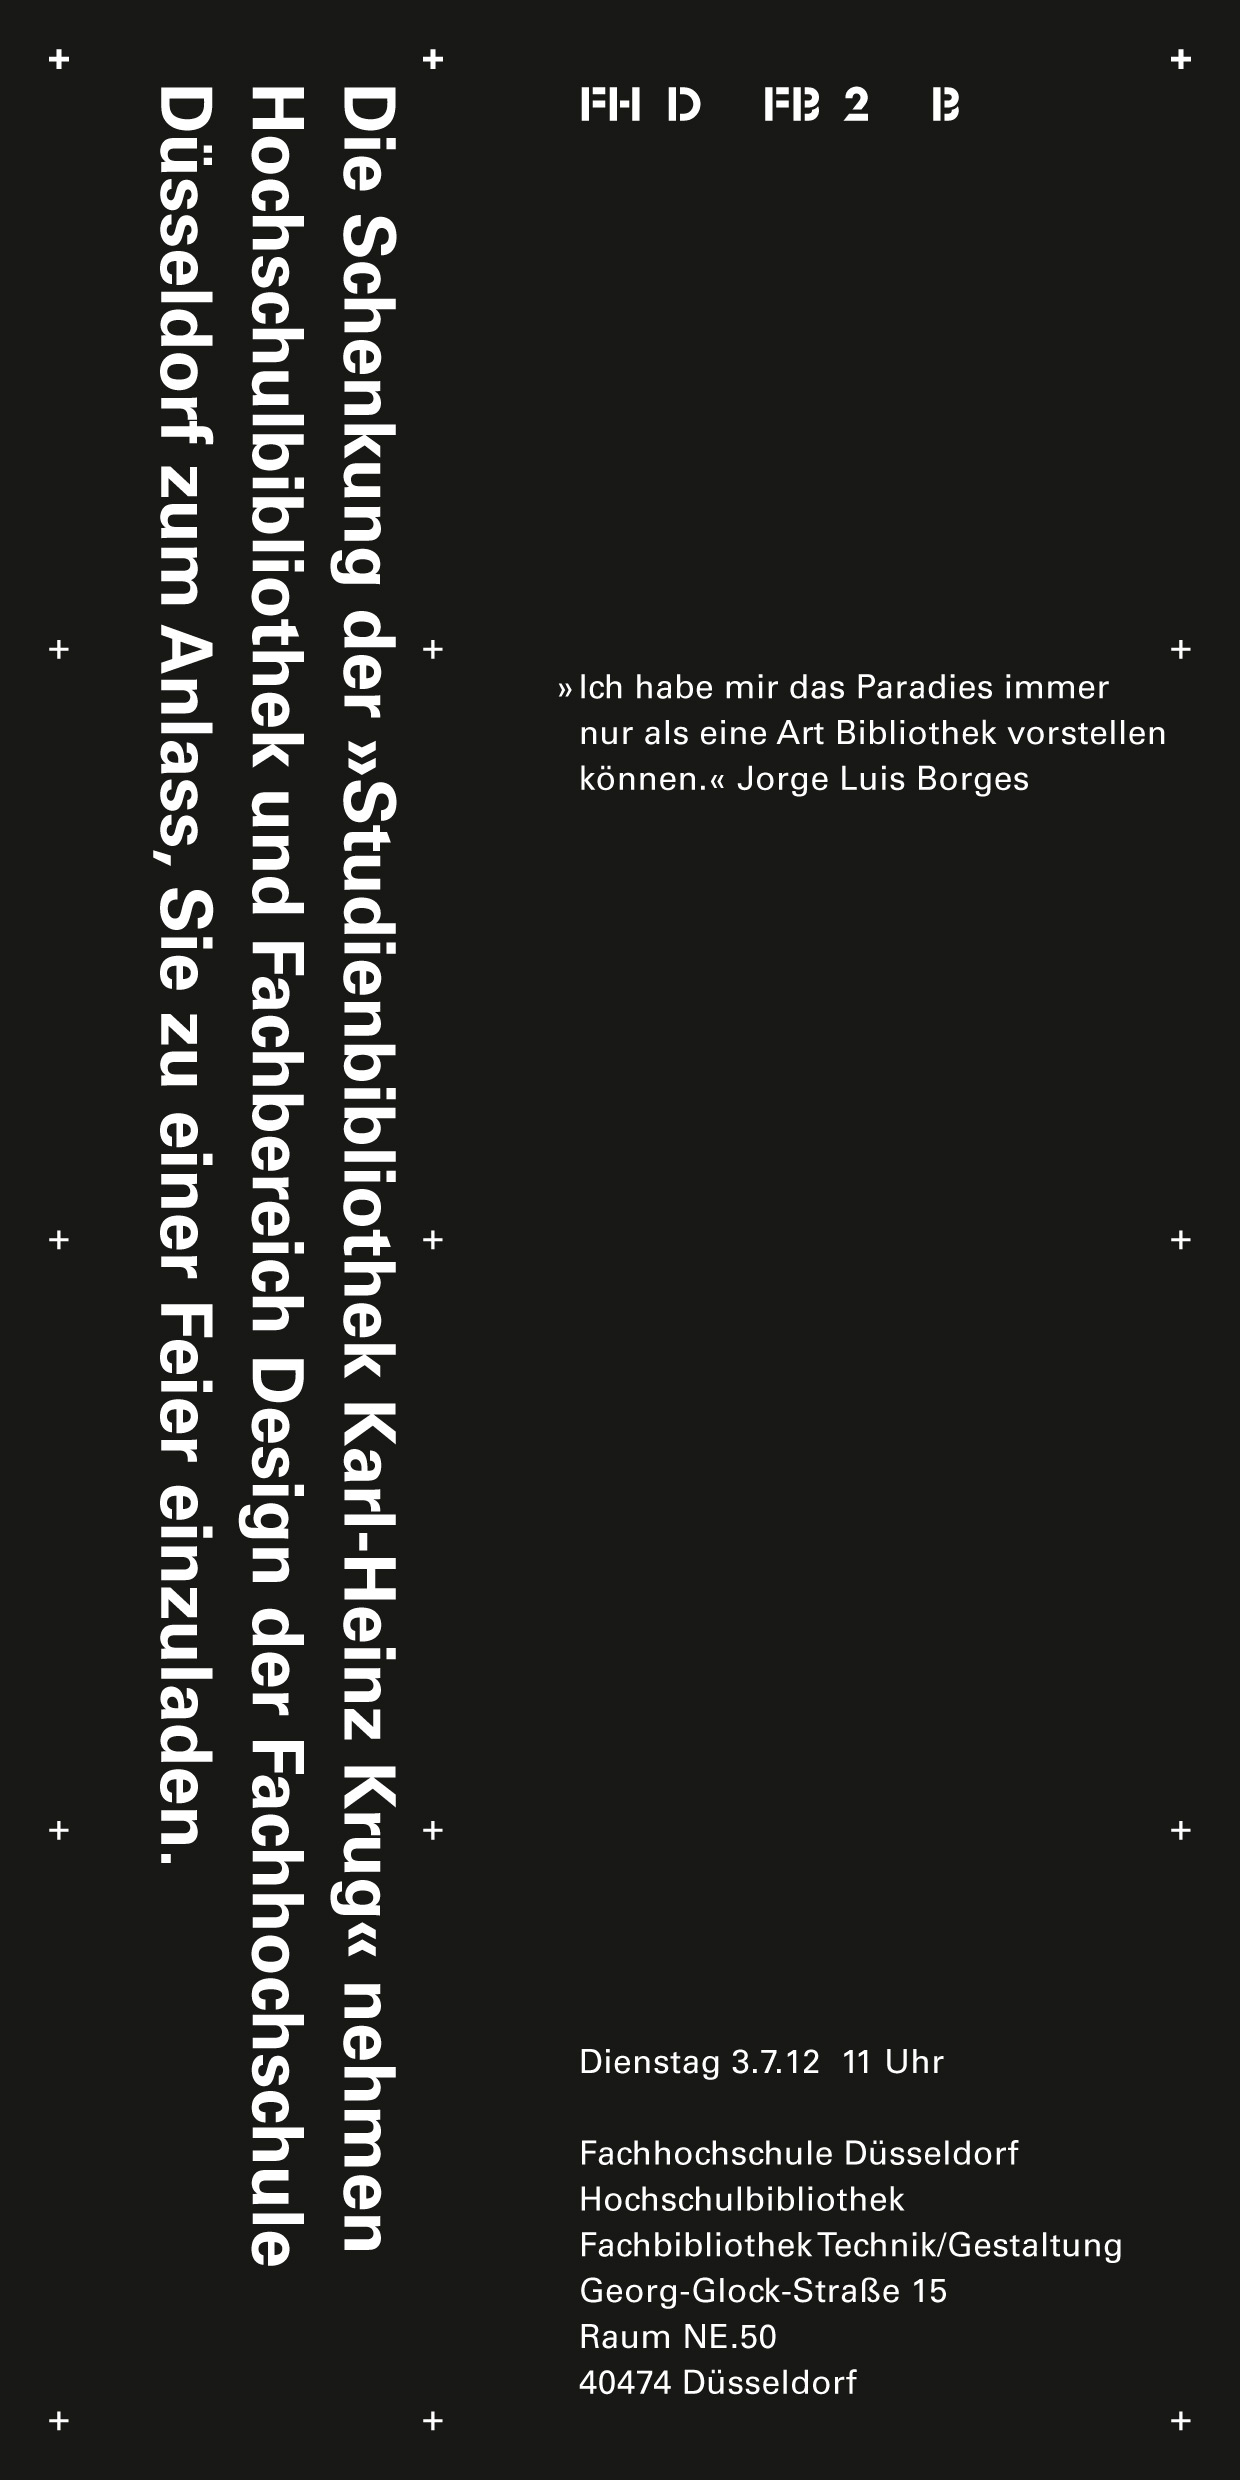 Studienbibliothek Karl-Heinz Krug, Eine Ausstellung, Einladungskarte, David Fischbach